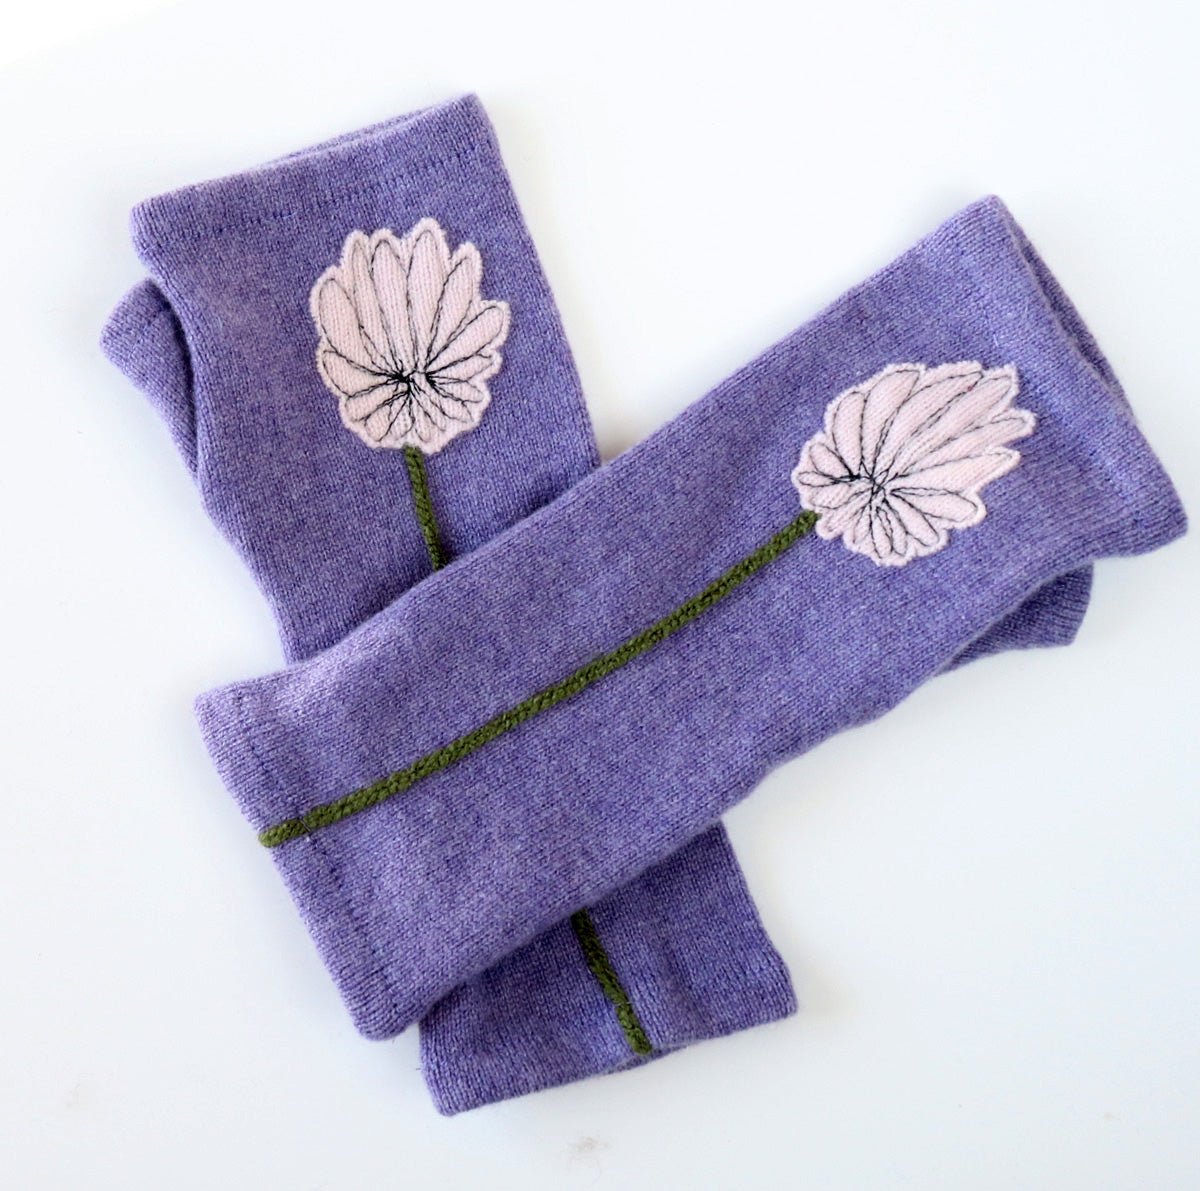 Mum on Lavender Cashmere Fingerless Gloves - BESPOKE PROVISIONS